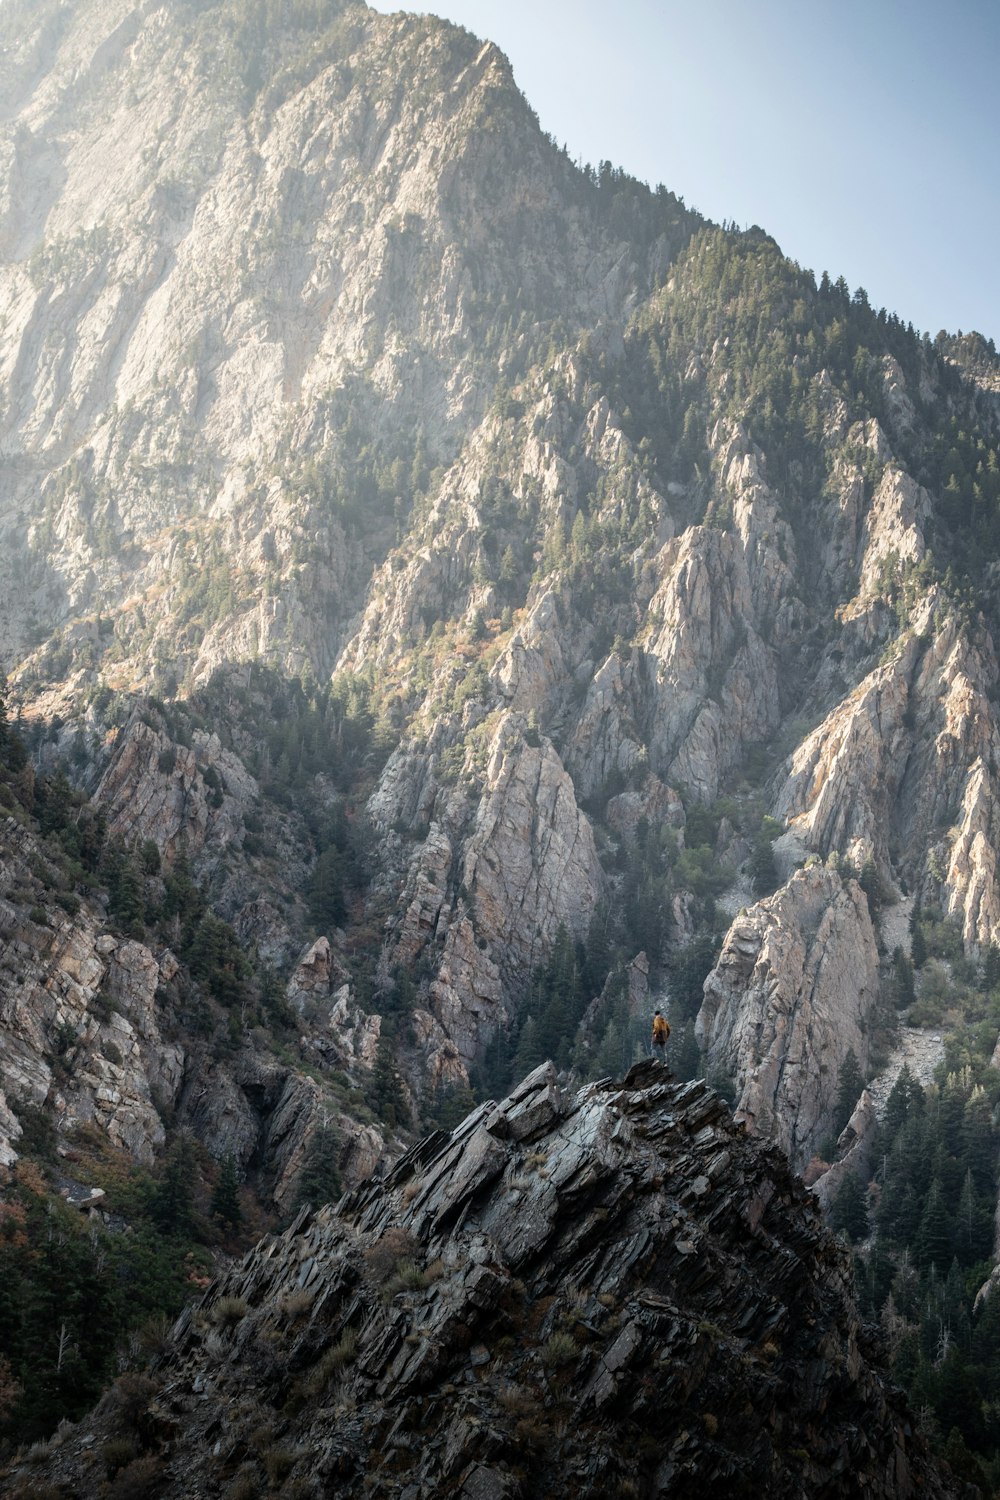 una persona in piedi sulla cima di una montagna rocciosa